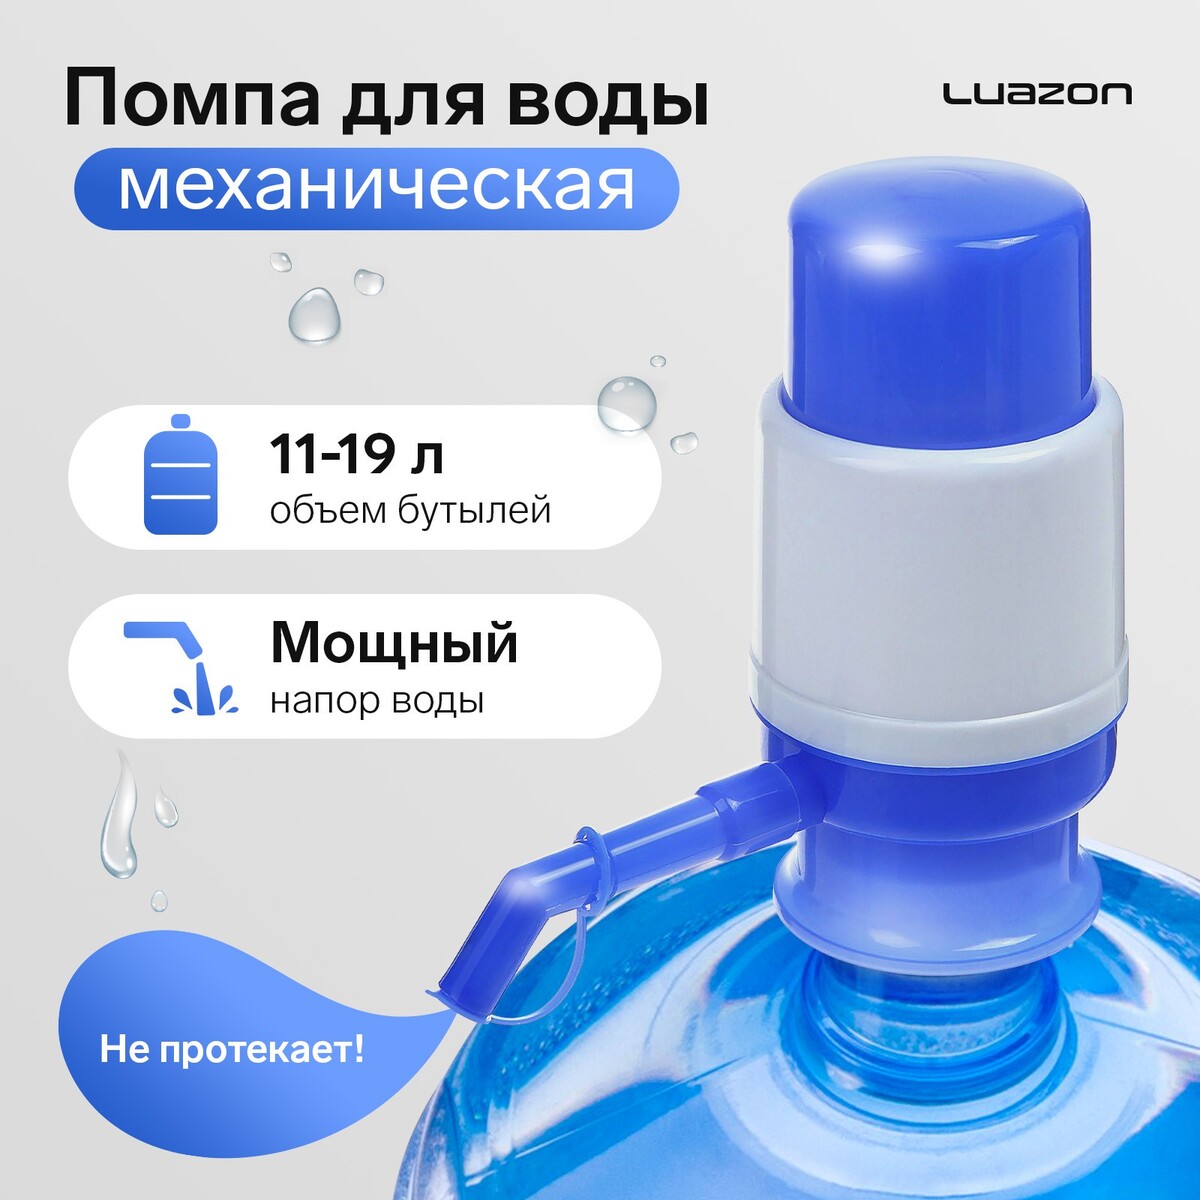 Помпа для воды luazon, механическая, малая, под бутыль от 11 до 19 л, голубая помпа для воды luazon механическая средняя под бутыль от 11 до 19 л голубая